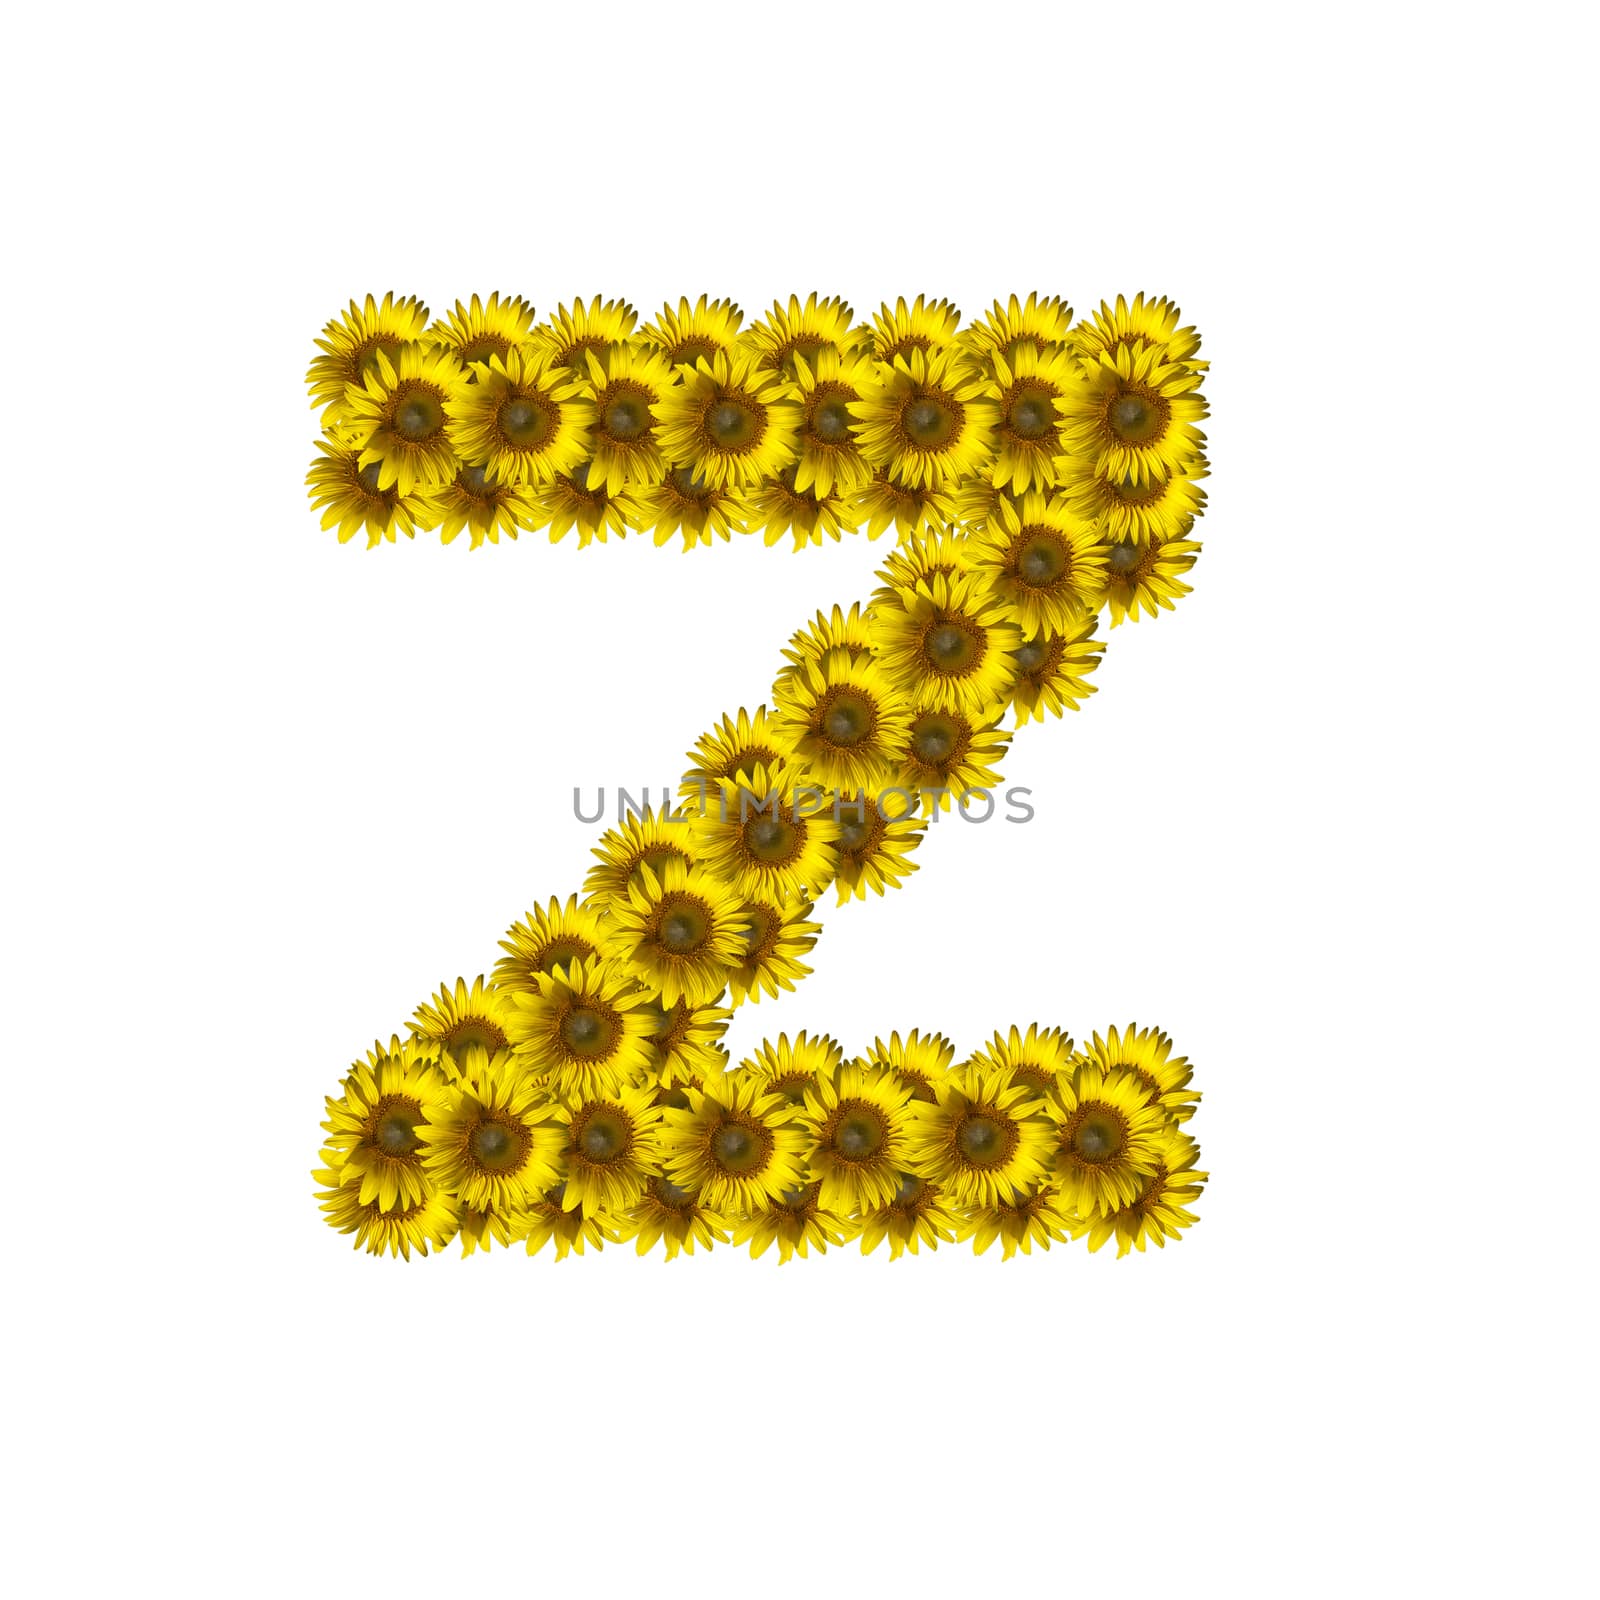 Sunflower alphabet isolated on white background, letter Z